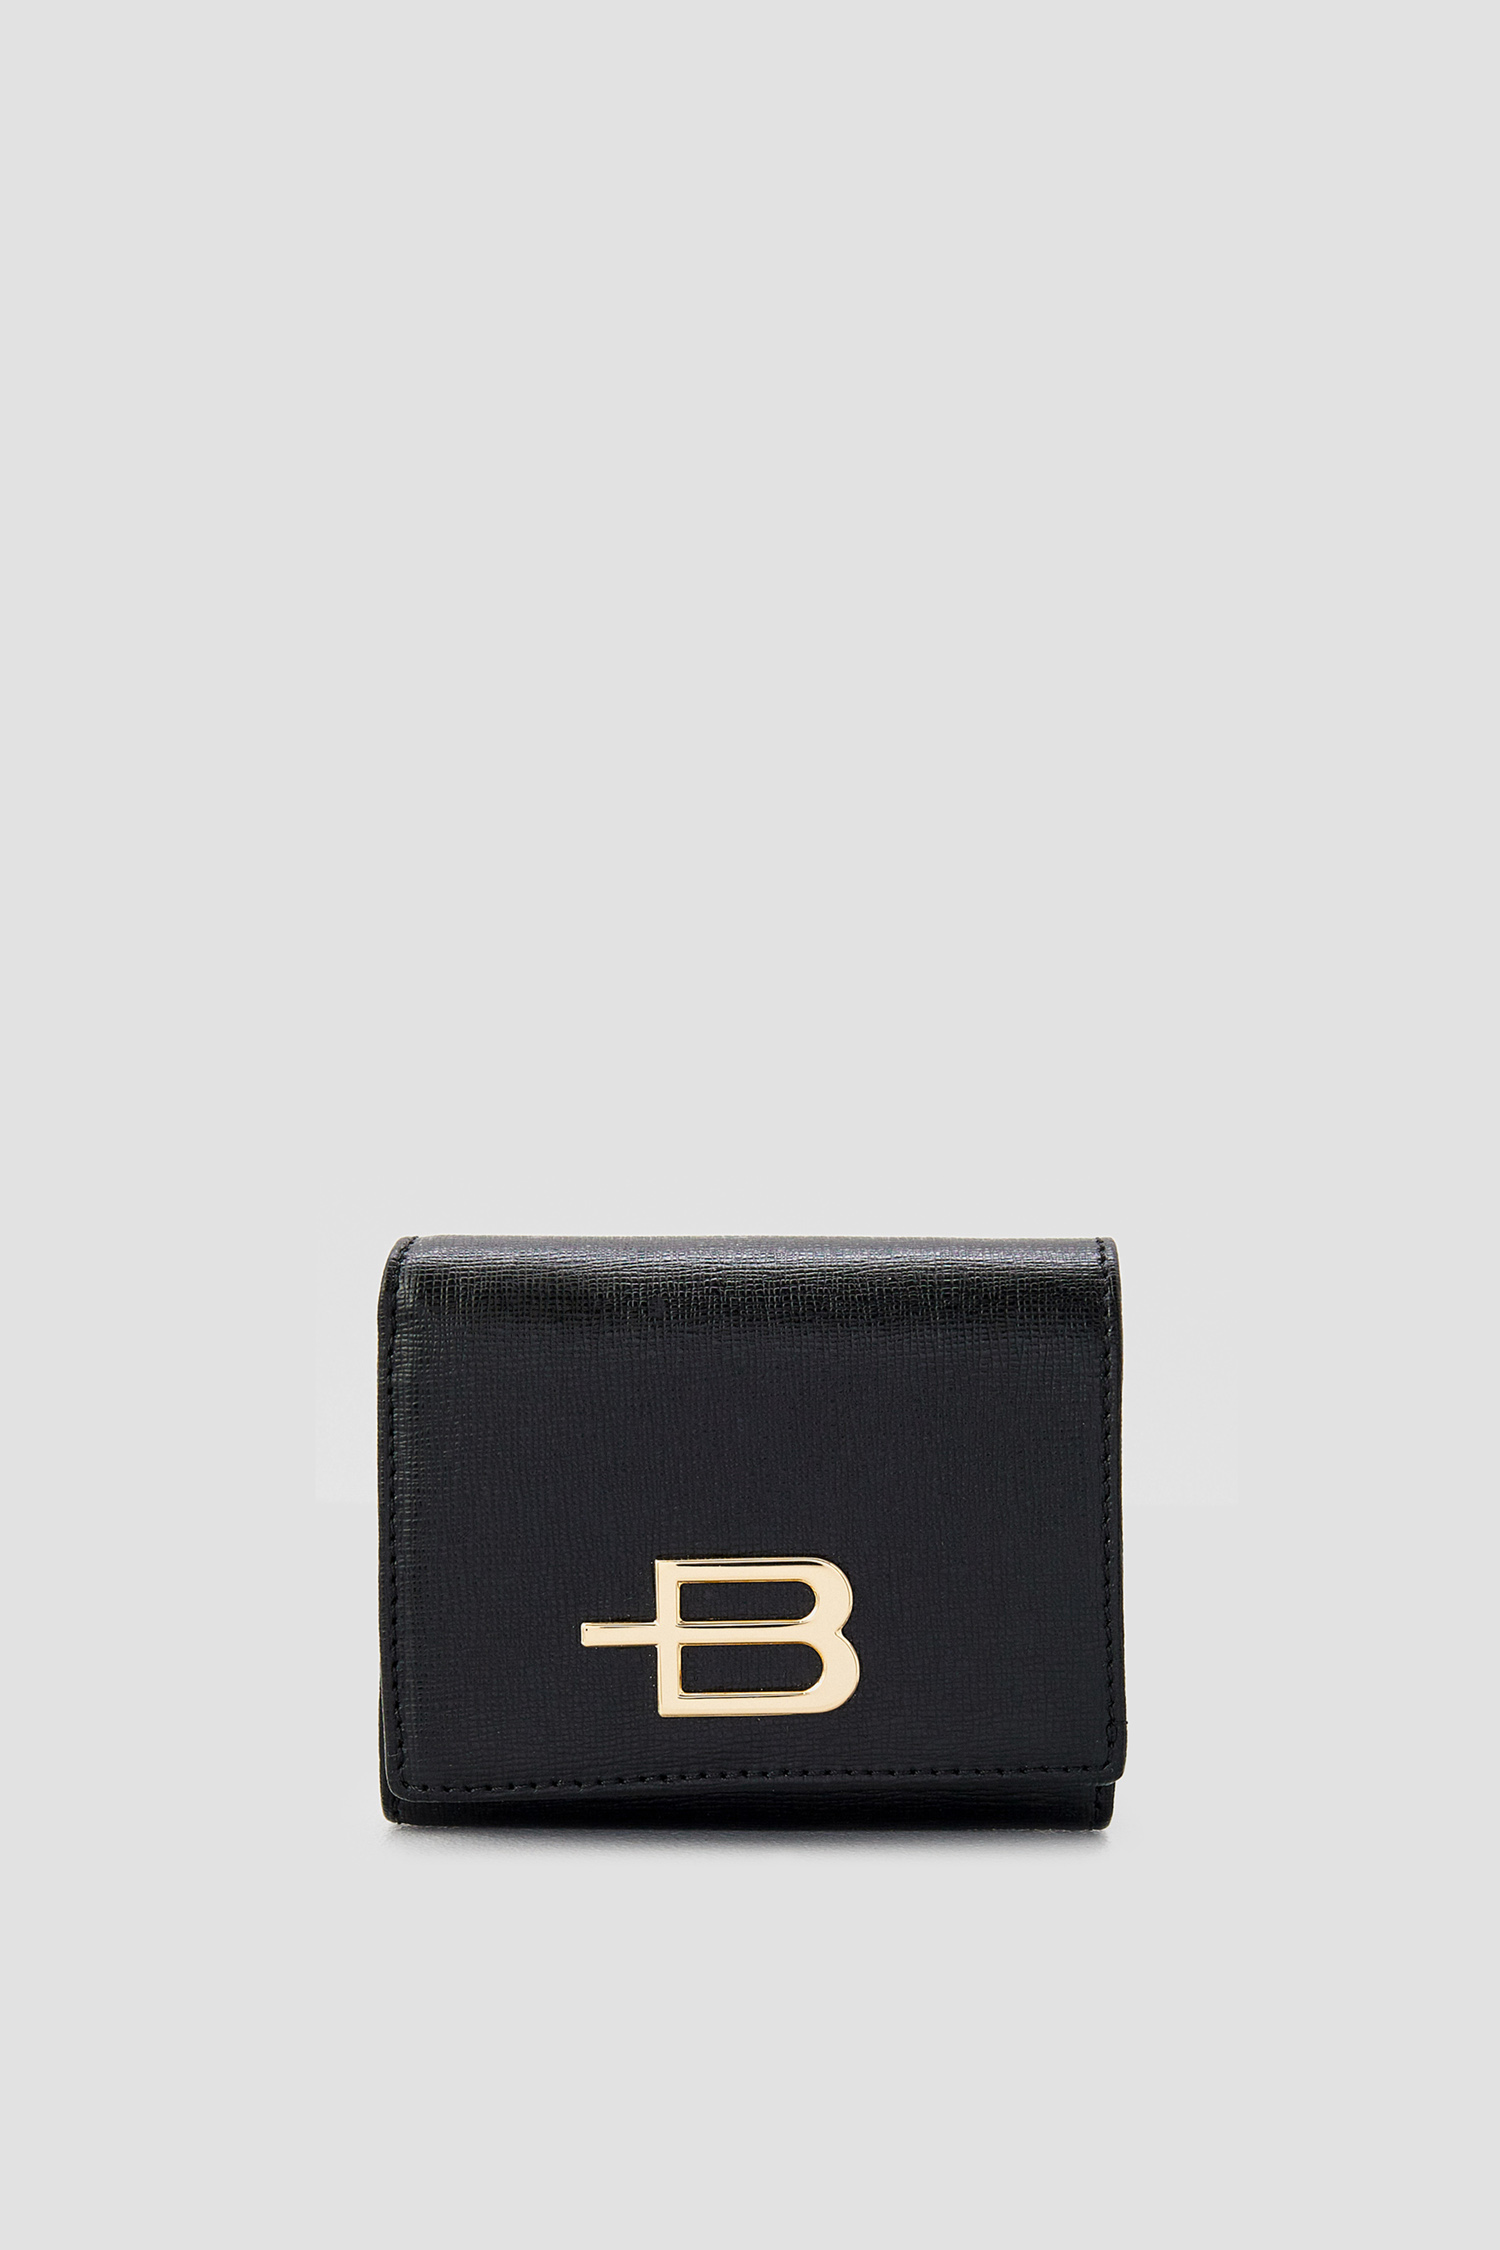 Жіночий чорний шкіряний гаманець Baldinini P3B005SAFF;0000